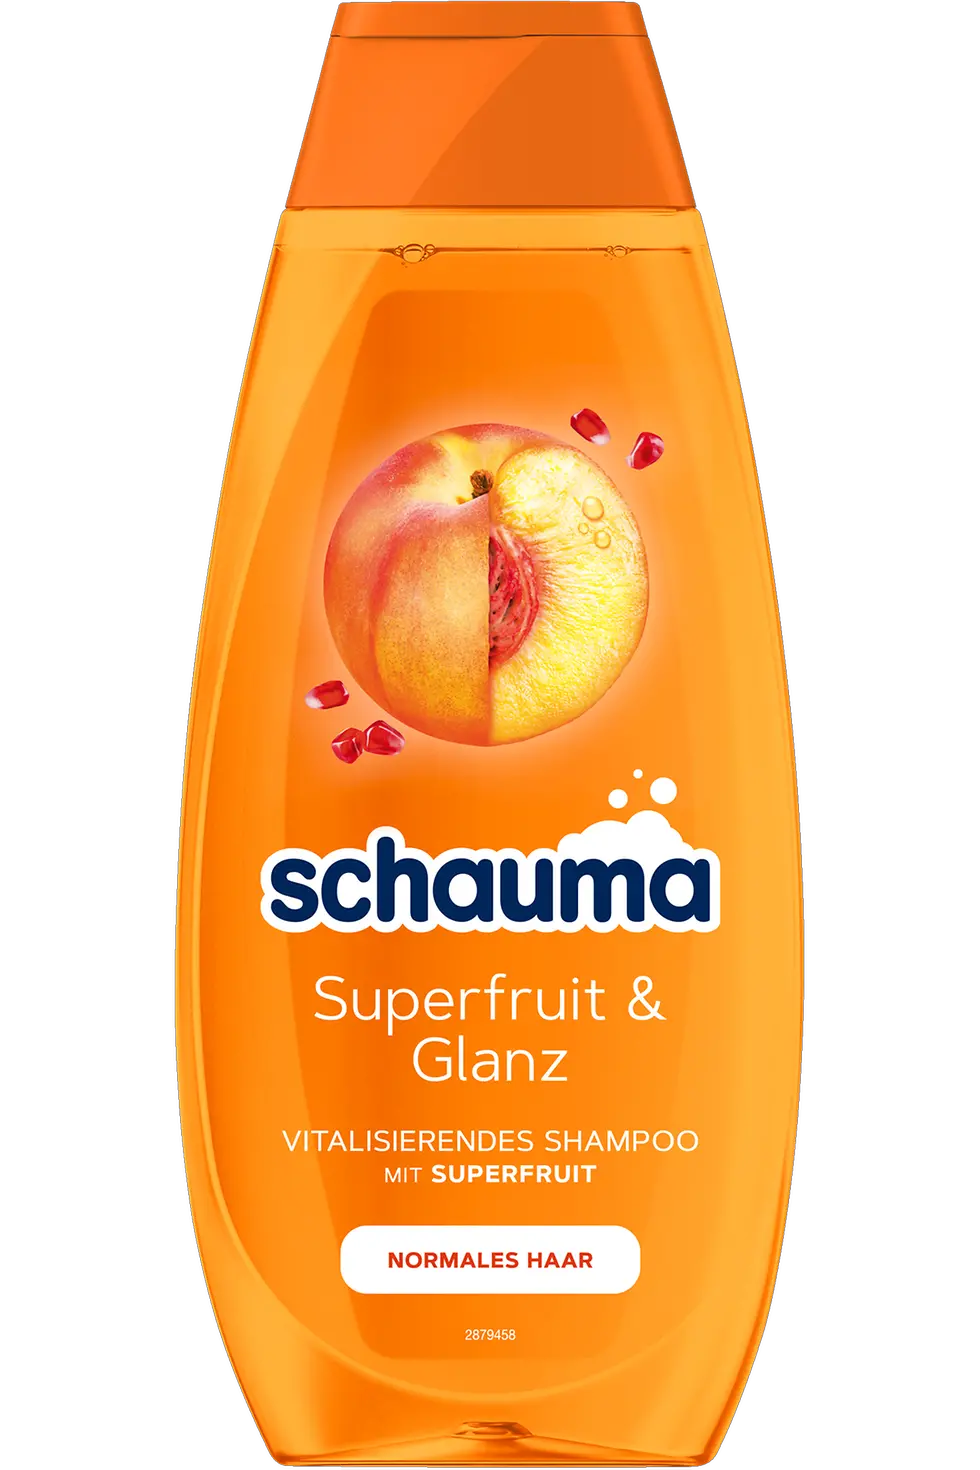 schauma Shampoo Superfruit & Glanz